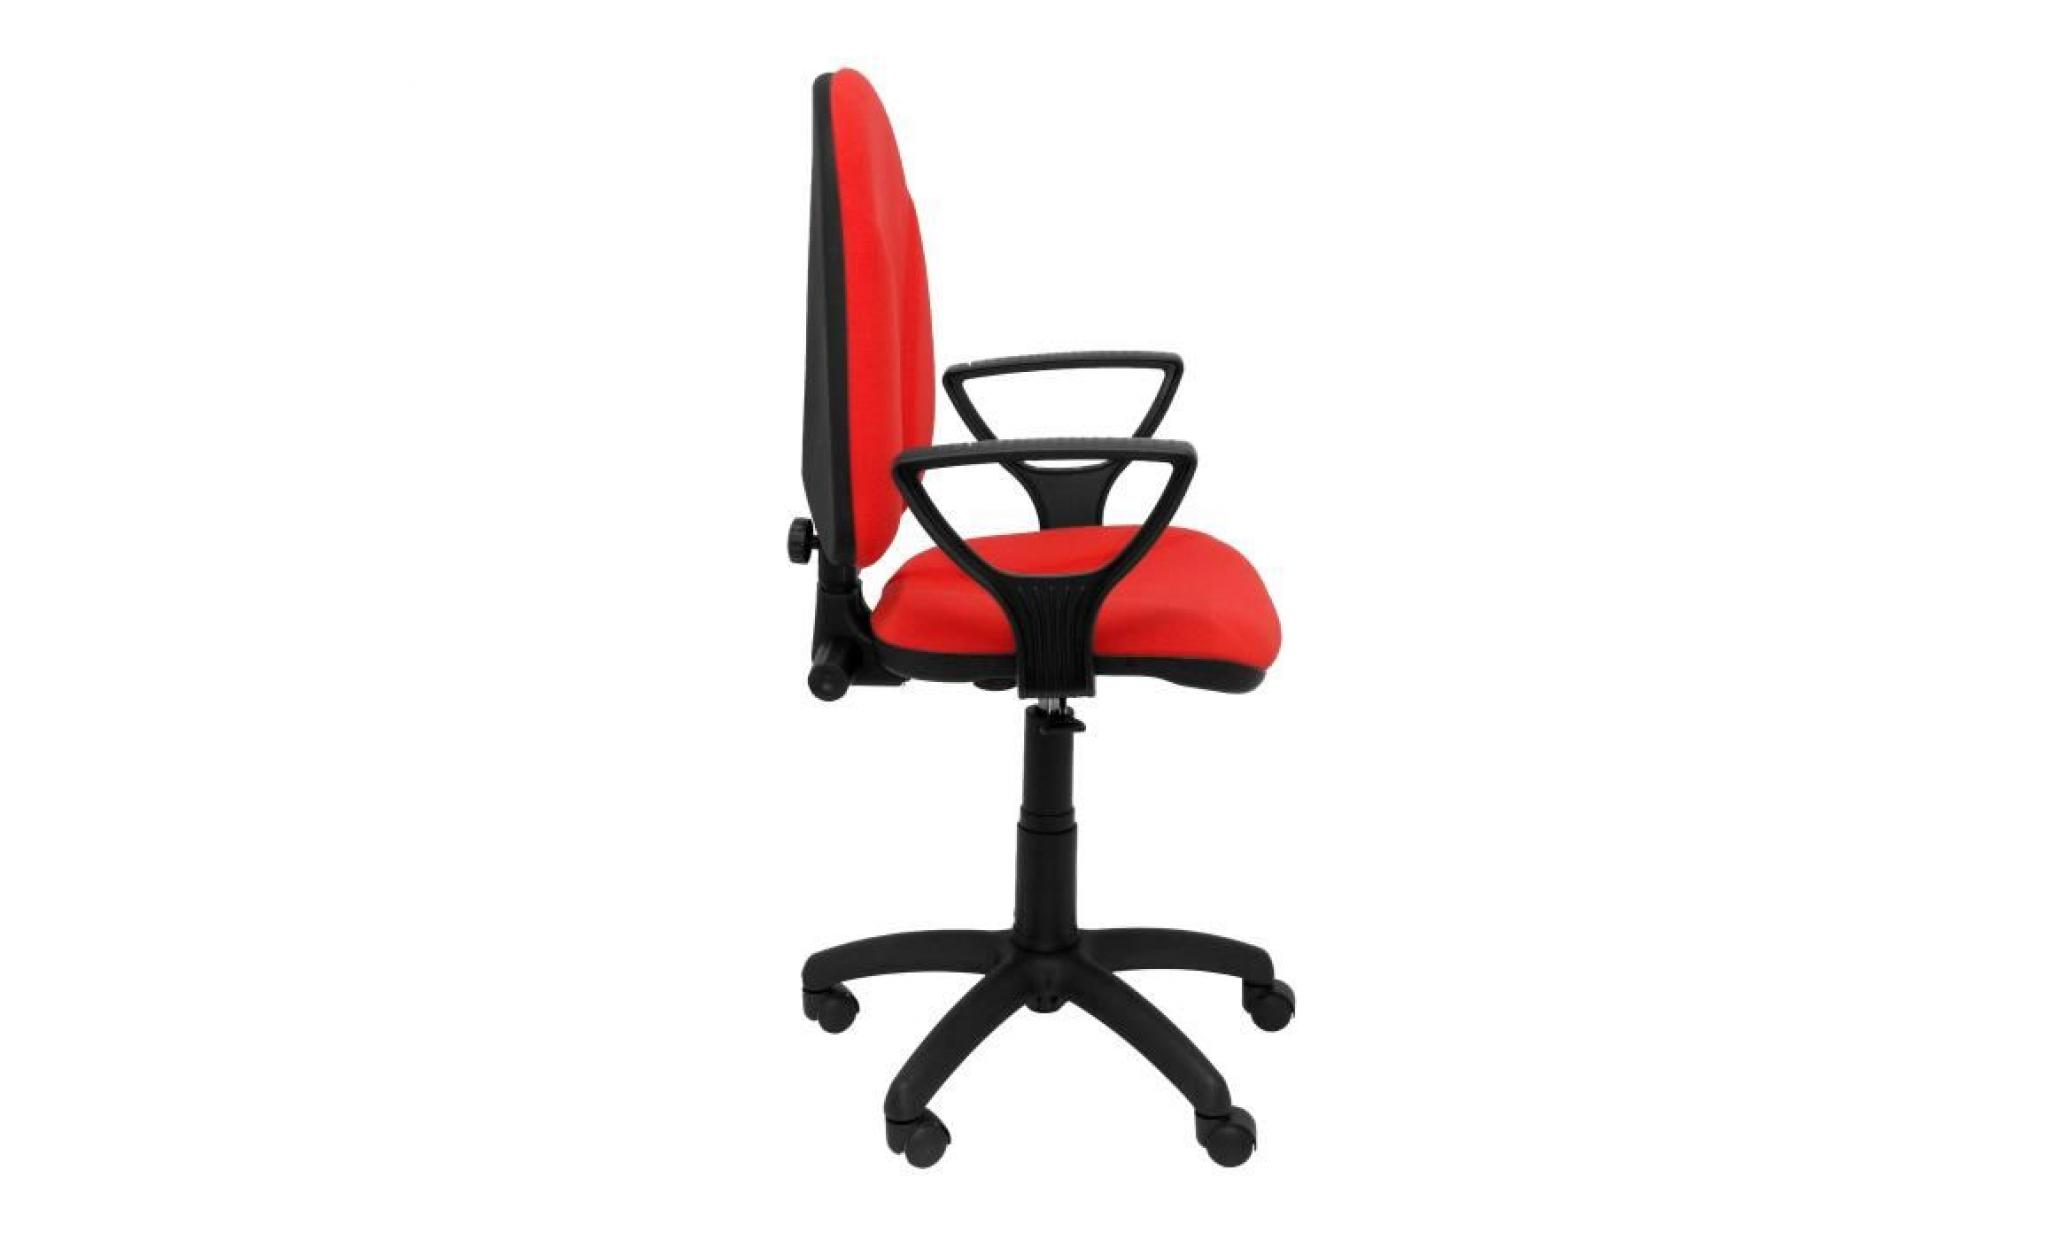 modello 1006rj algarra   sedia da ufficio ergonomica con meccanismo di contatto permanente e regolabile in altezza   sedile e pas cher